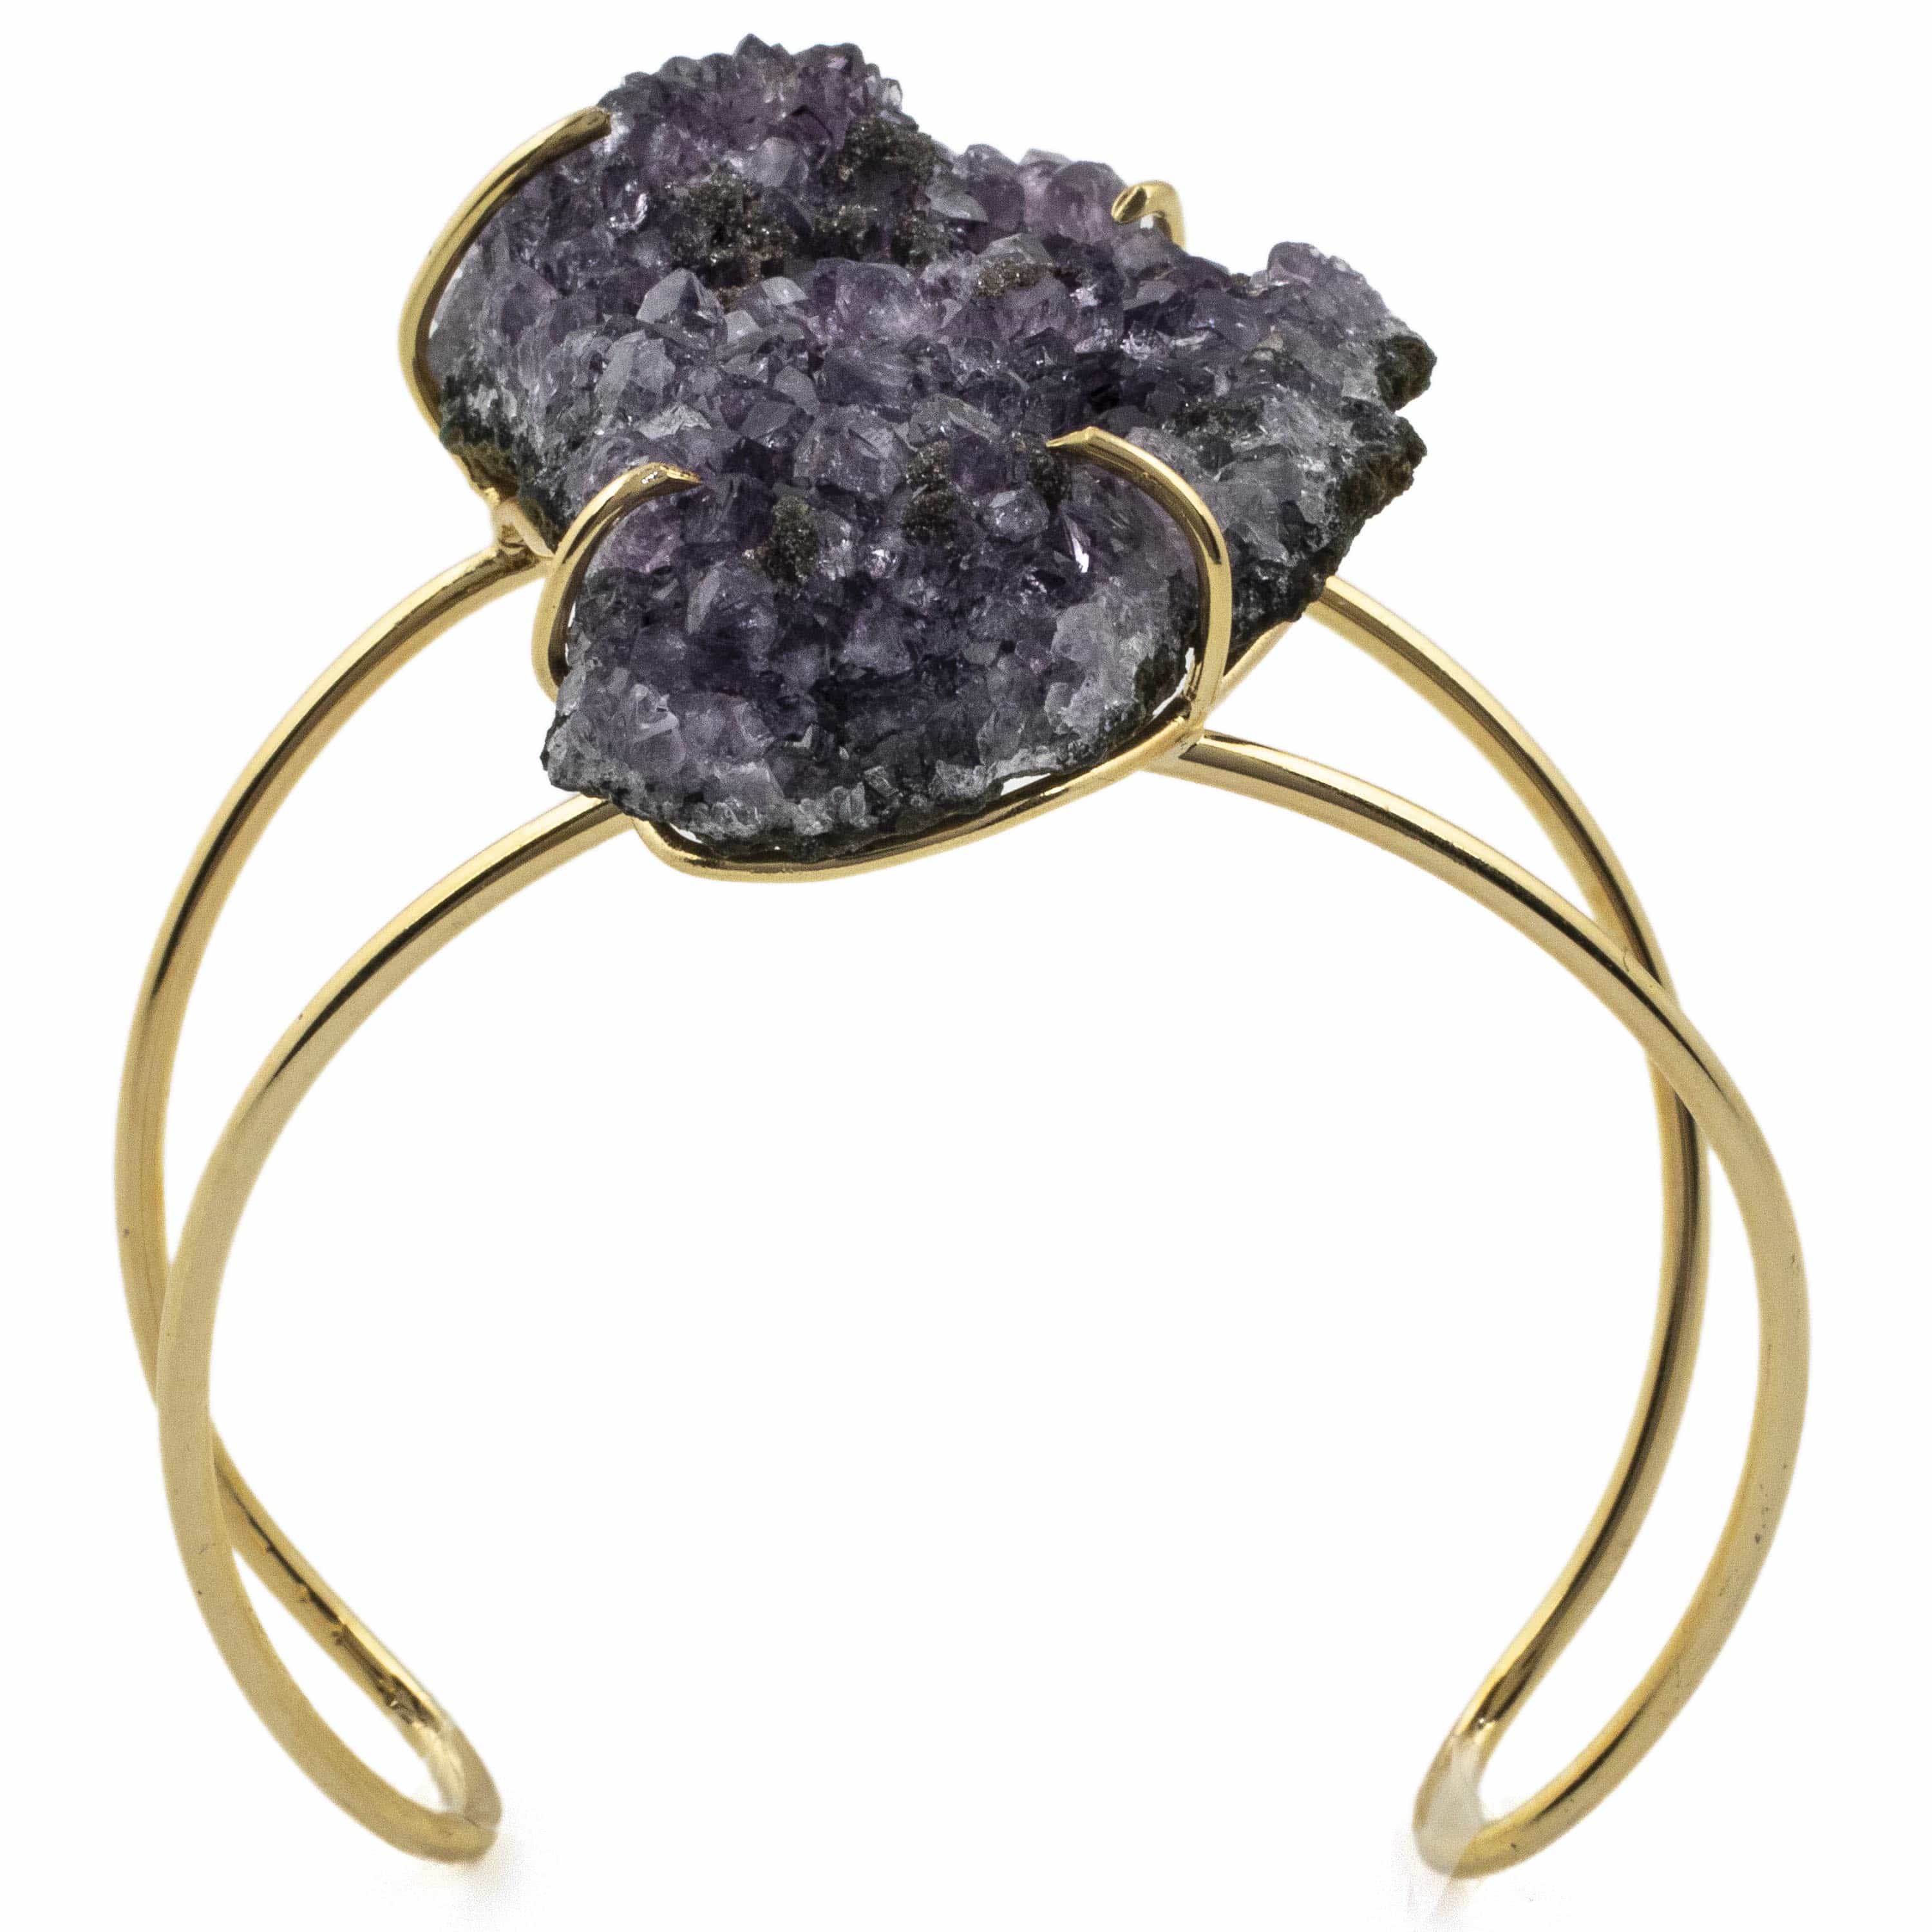 Kalifano Crystal Jewelry Druzy Amethyst Cuff Bracelet CJB-1015-DYAM